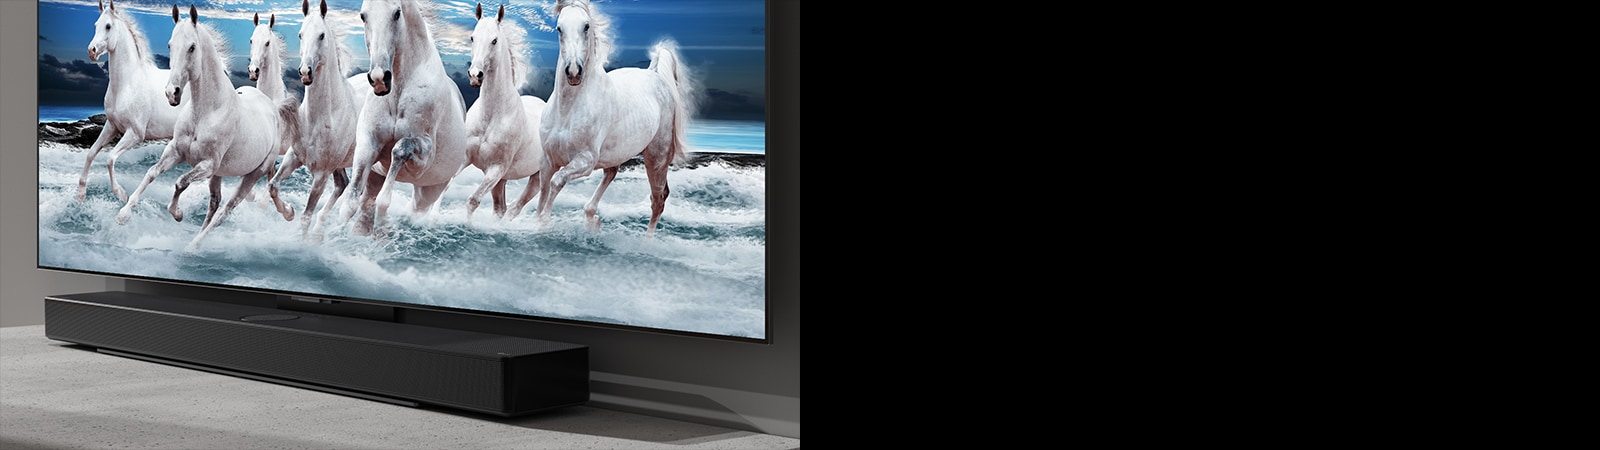 Soundbar und Fernsehgerät stehen auf dem weißen Tisch und 7 weiße Pferde sind auf dem Fernsehbildschirm zu sehen.